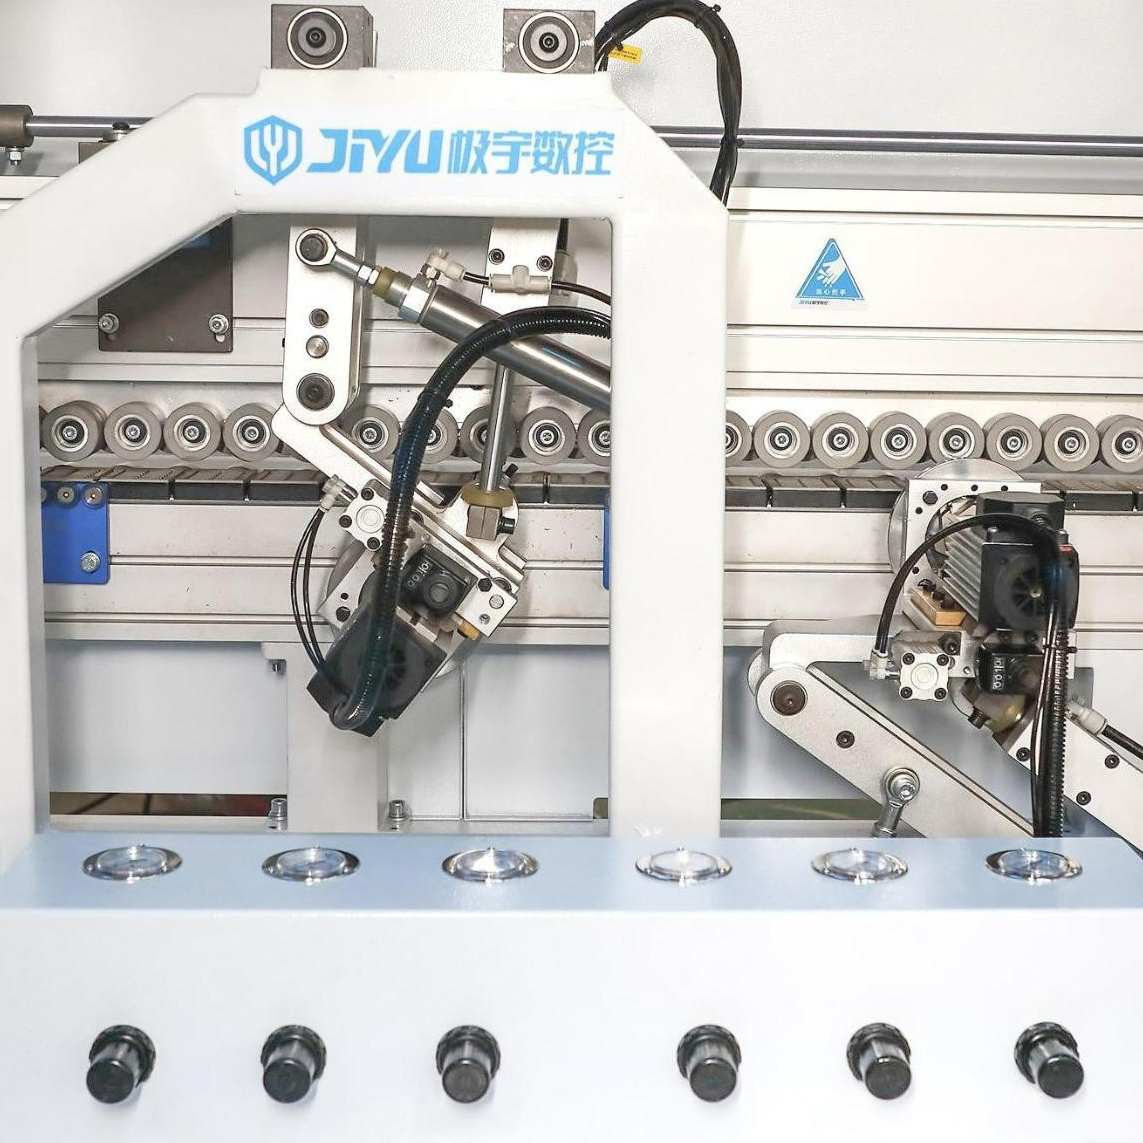 JY-568JKGSSC(PUR) Otomatik Dwat Liy Edge Banding Machine (6)rlz